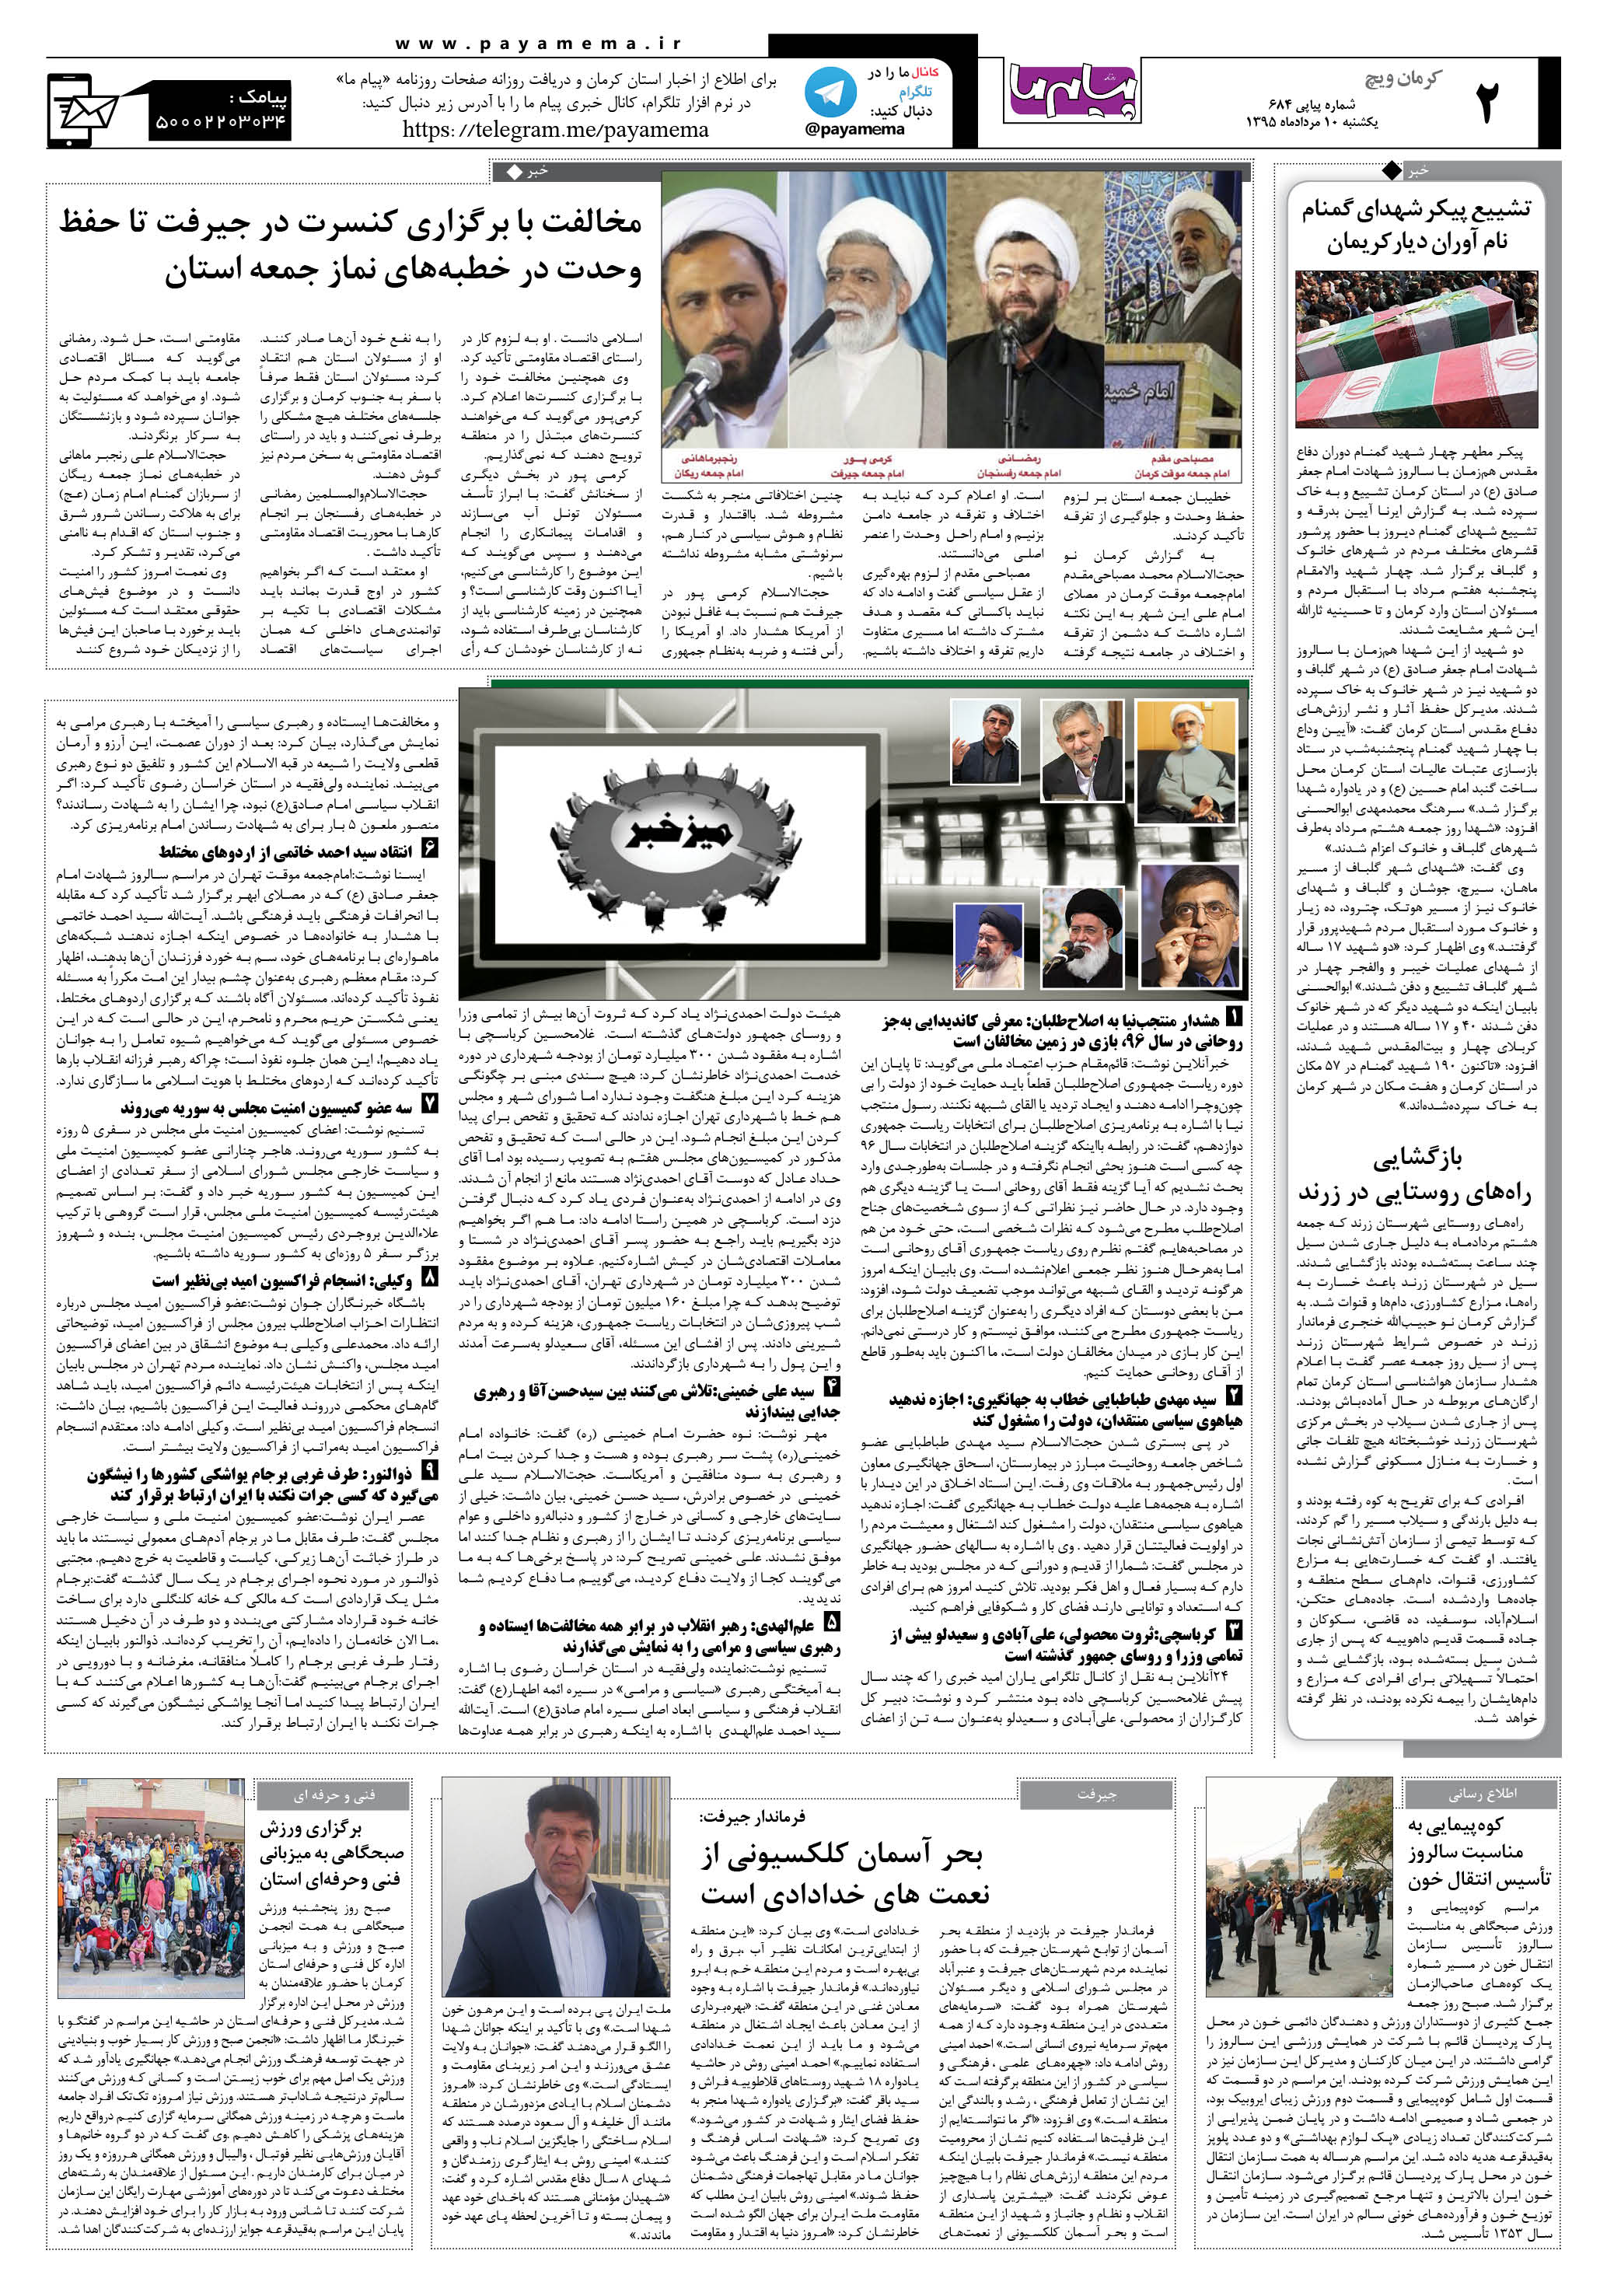 صفحه کرمان ویج شماره 684 روزنامه پیام ما